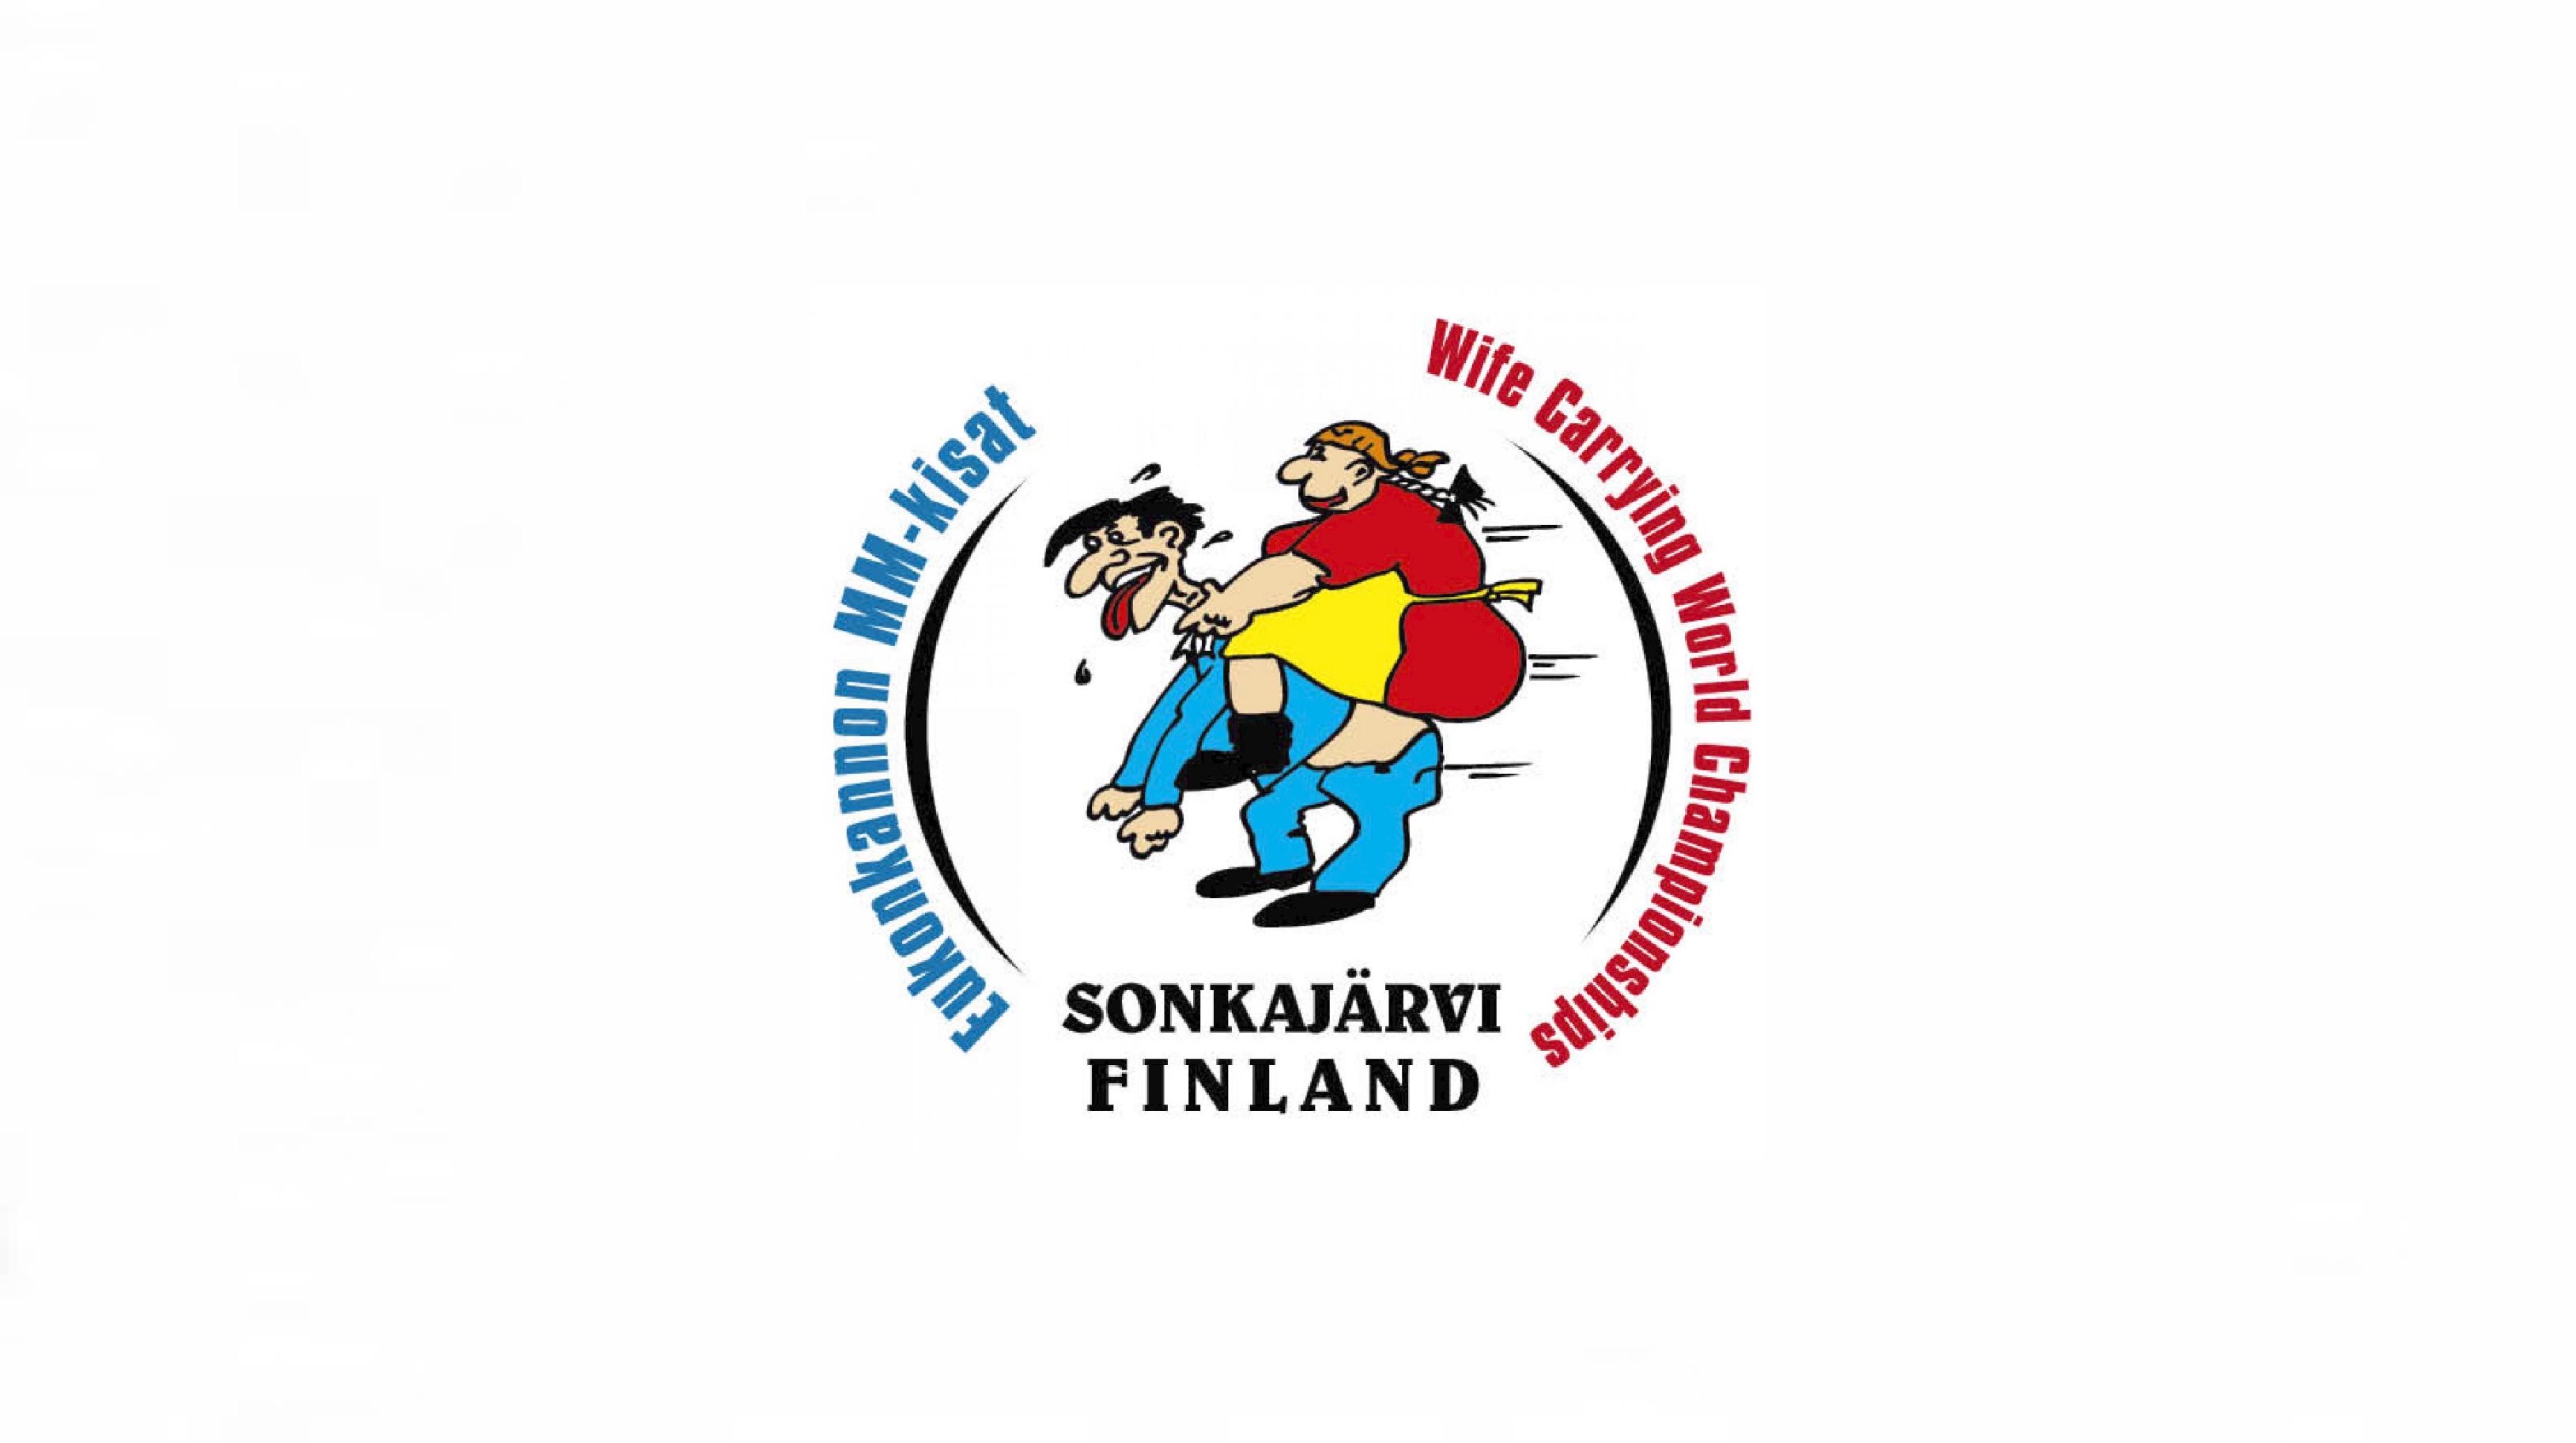 誰よりも速く運べ フィンランドの奥様運び選手権 北欧情報メディアnorr